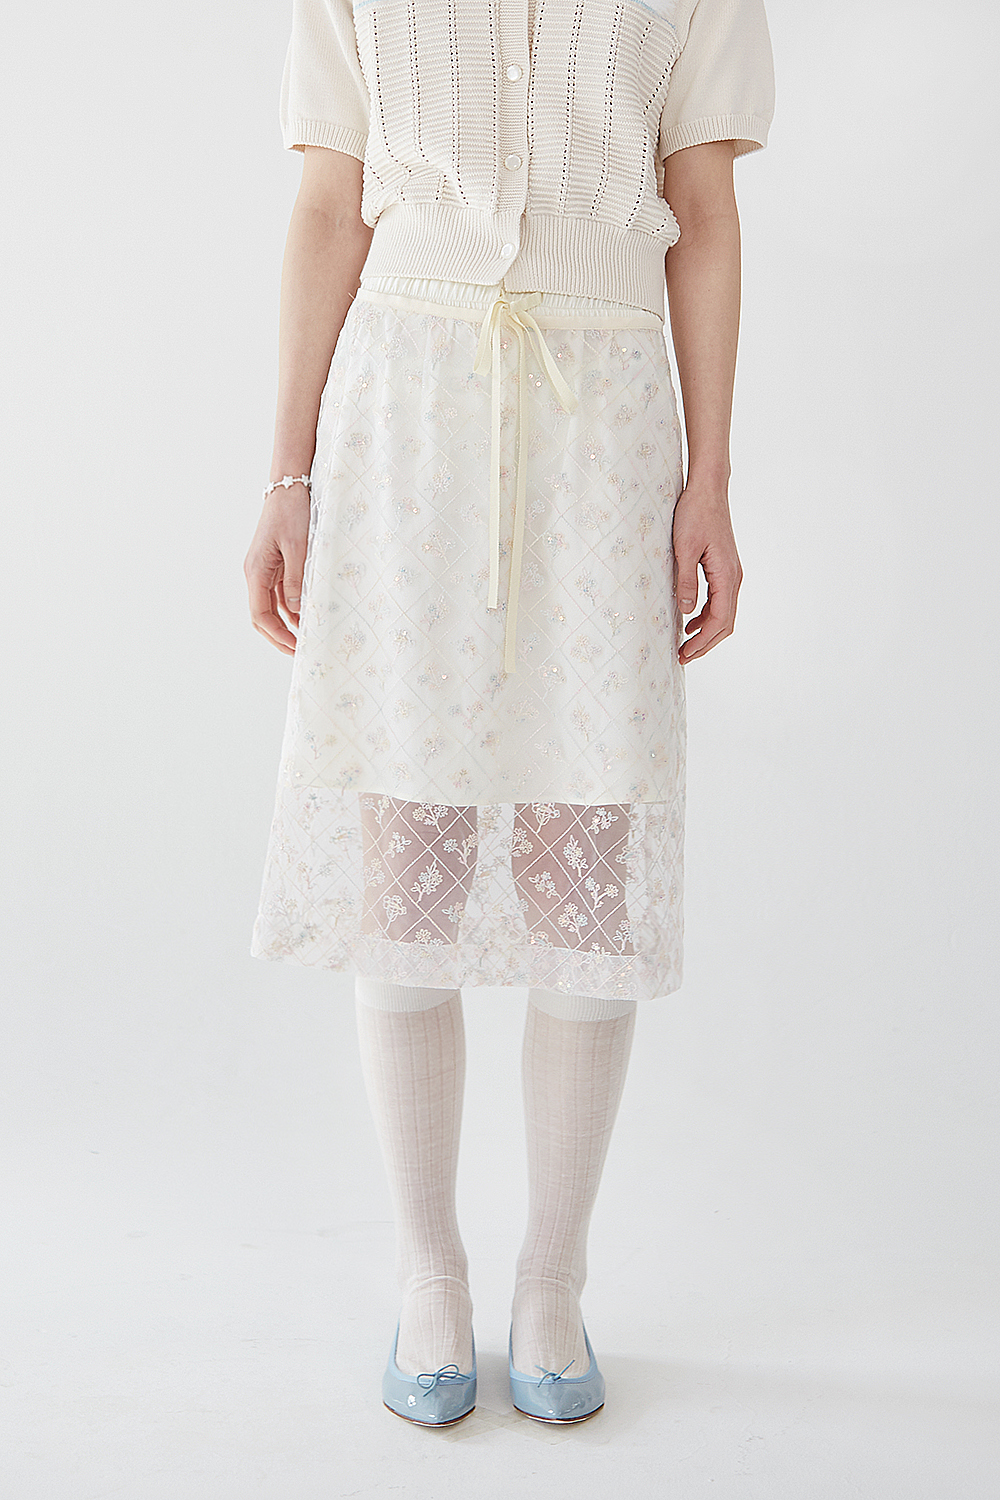 Greta layered skirt (2 ways)